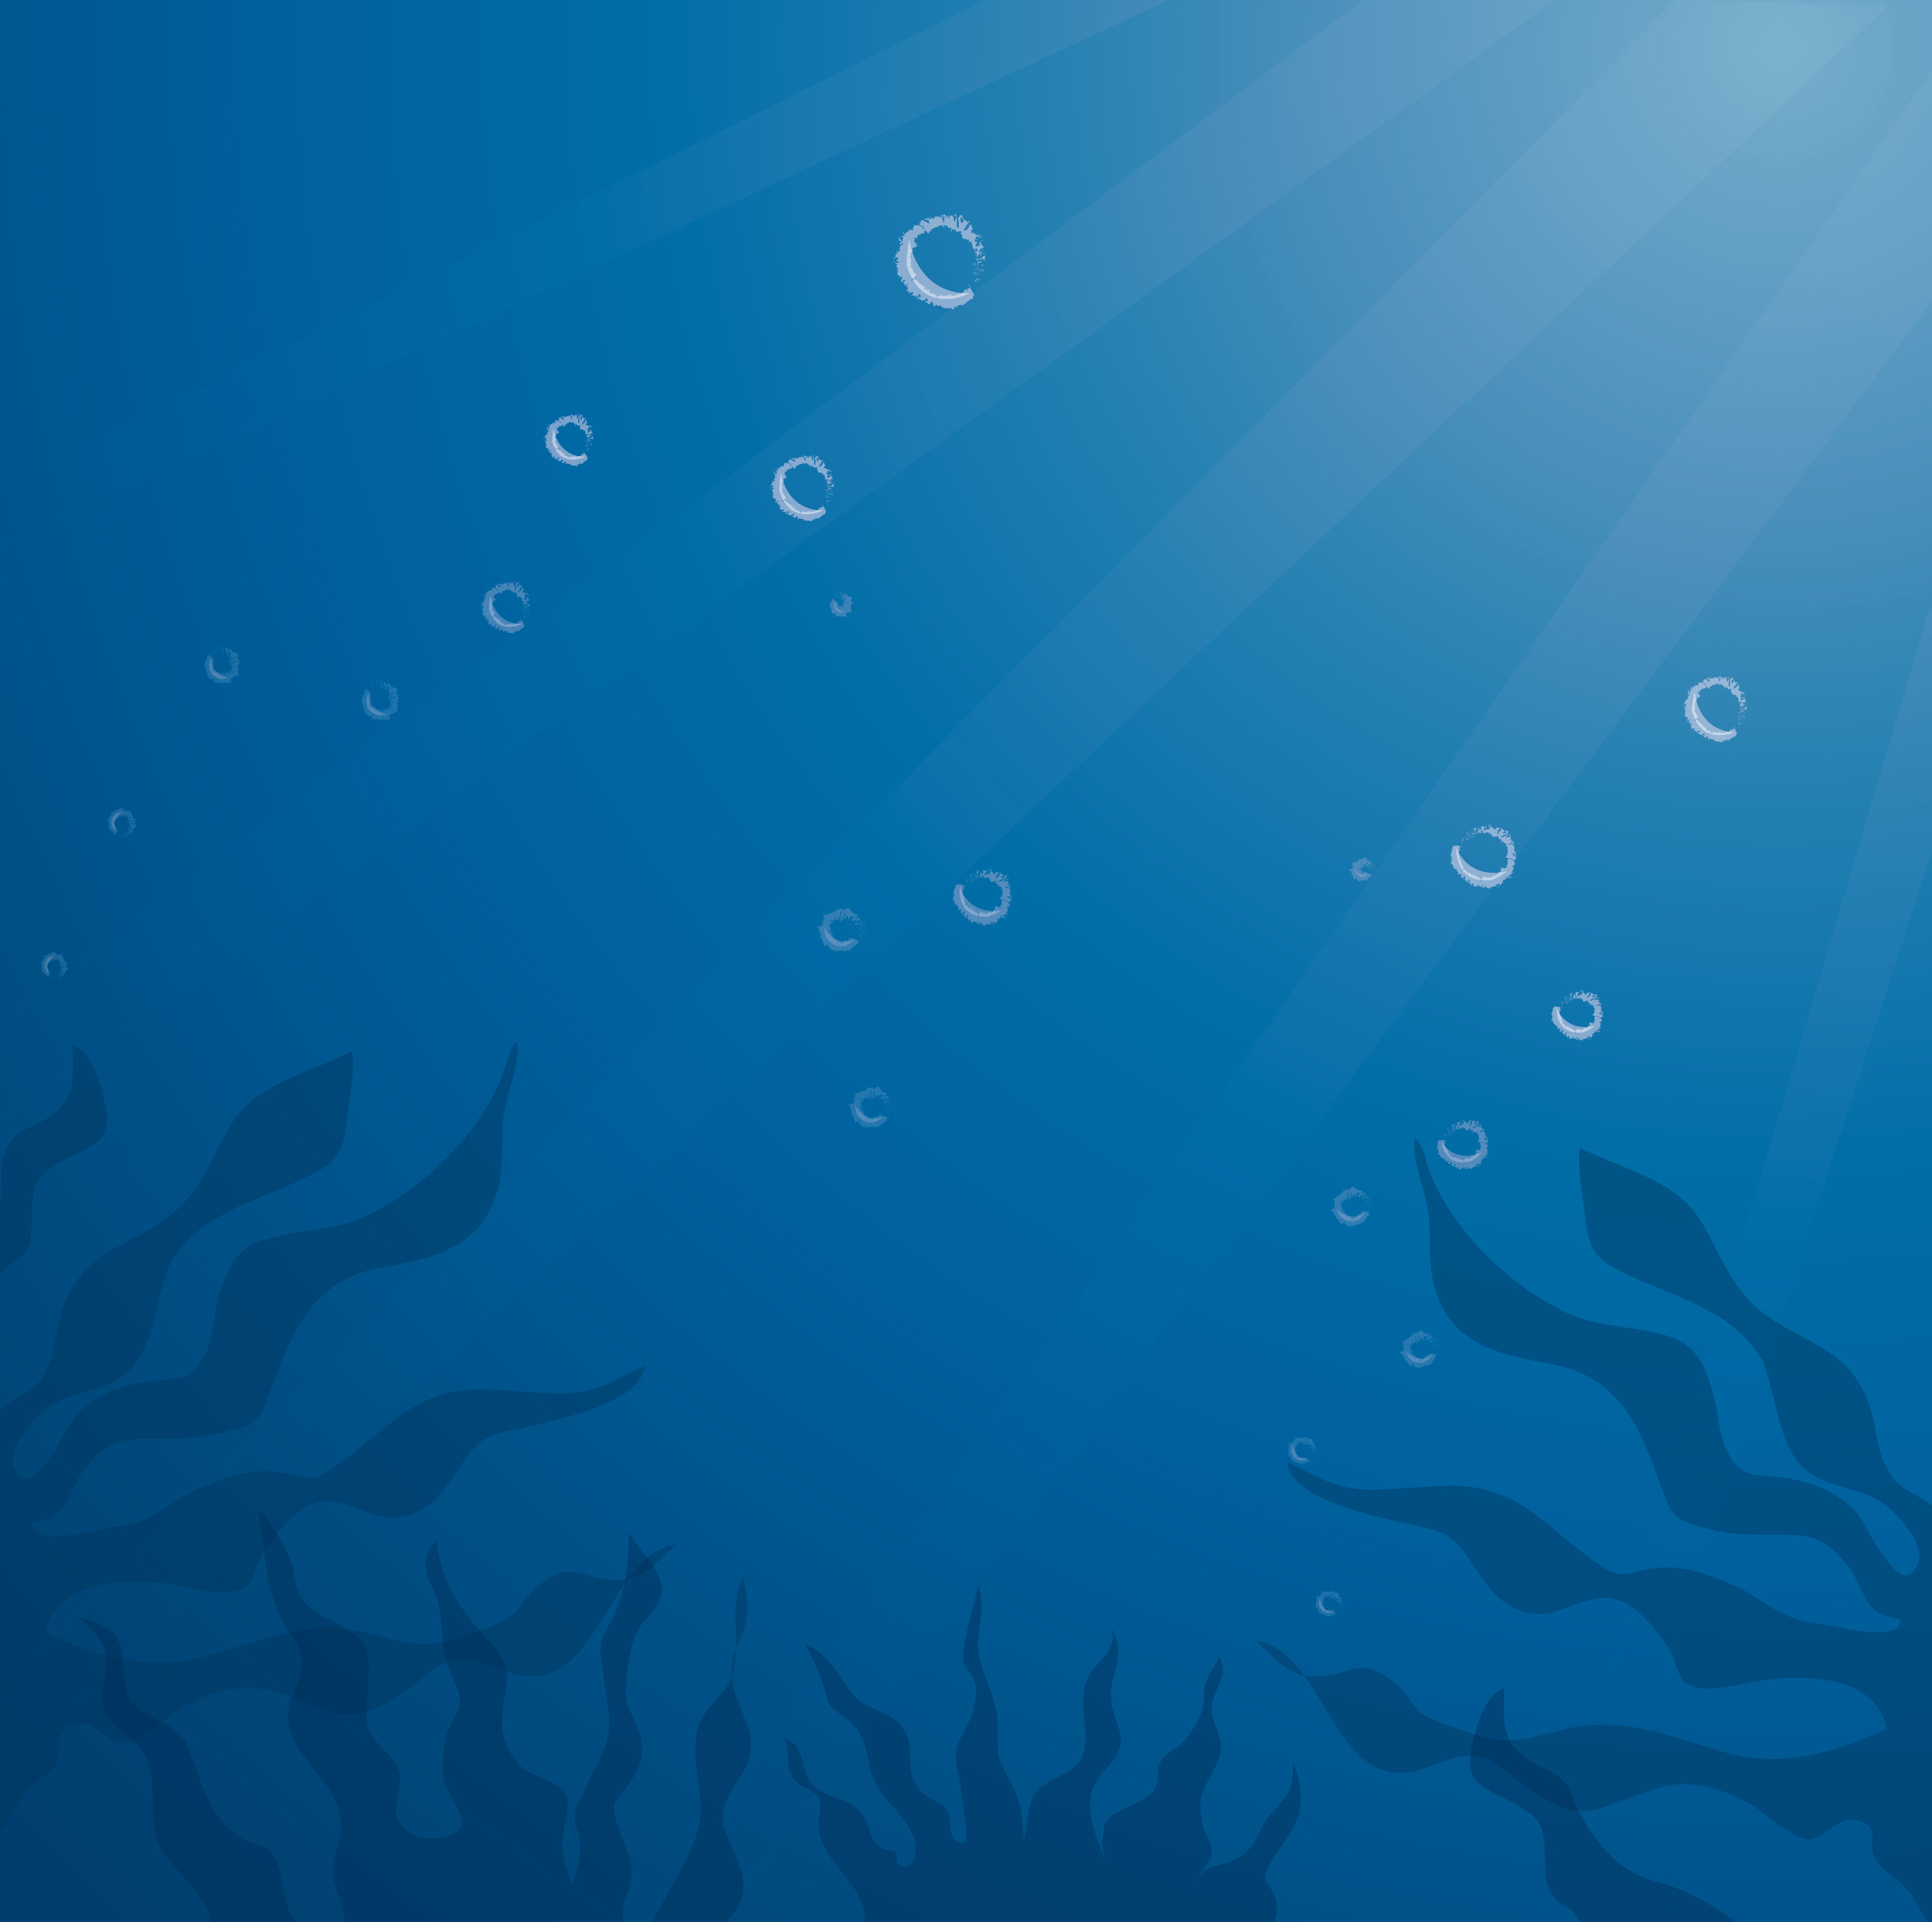 Bạn đang muốn tìm kiếm một hình nền độc đáo và đẹp mắt cho máy tính của mình? Vector deep blue sea background chính là điều bạn đang cần tìm. Không chỉ là một hình ảnh đẹp, vector deep blue sea background cũng cung cấp cho bạn một loạt các tùy chọn tùy chỉnh, giúp bạn tạo ra một thiết kế độc đáo và ấn tượng cho máy tính của mình.